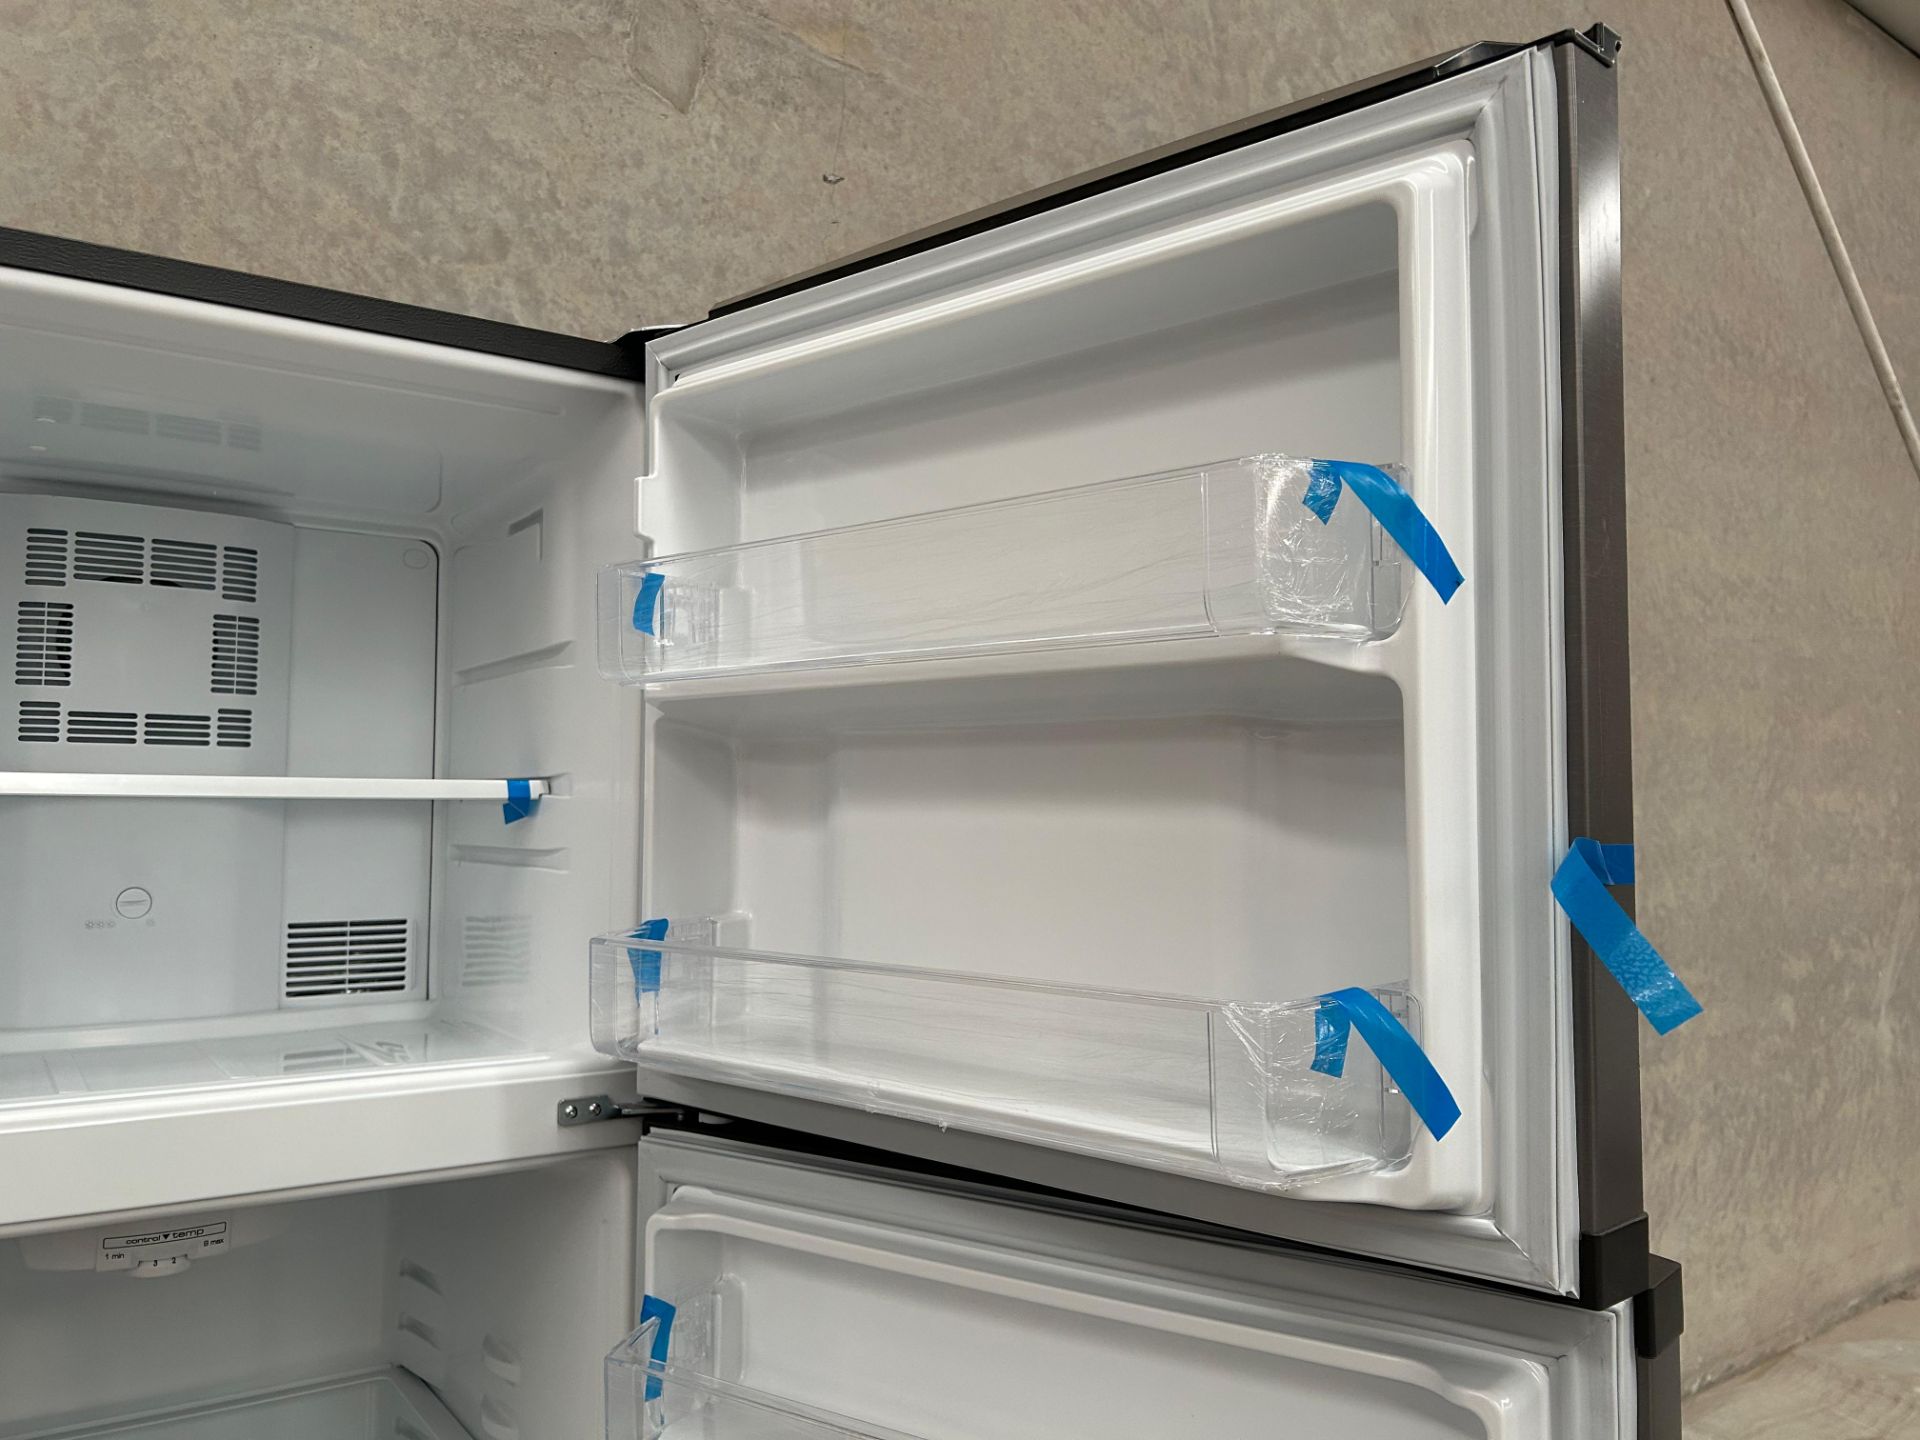 Lote de 2 Refrigeradores contiene: 1 Refrigerador Marca MABE, Modelo RME360PVMRM0, Serie 21969, Col - Image 8 of 15